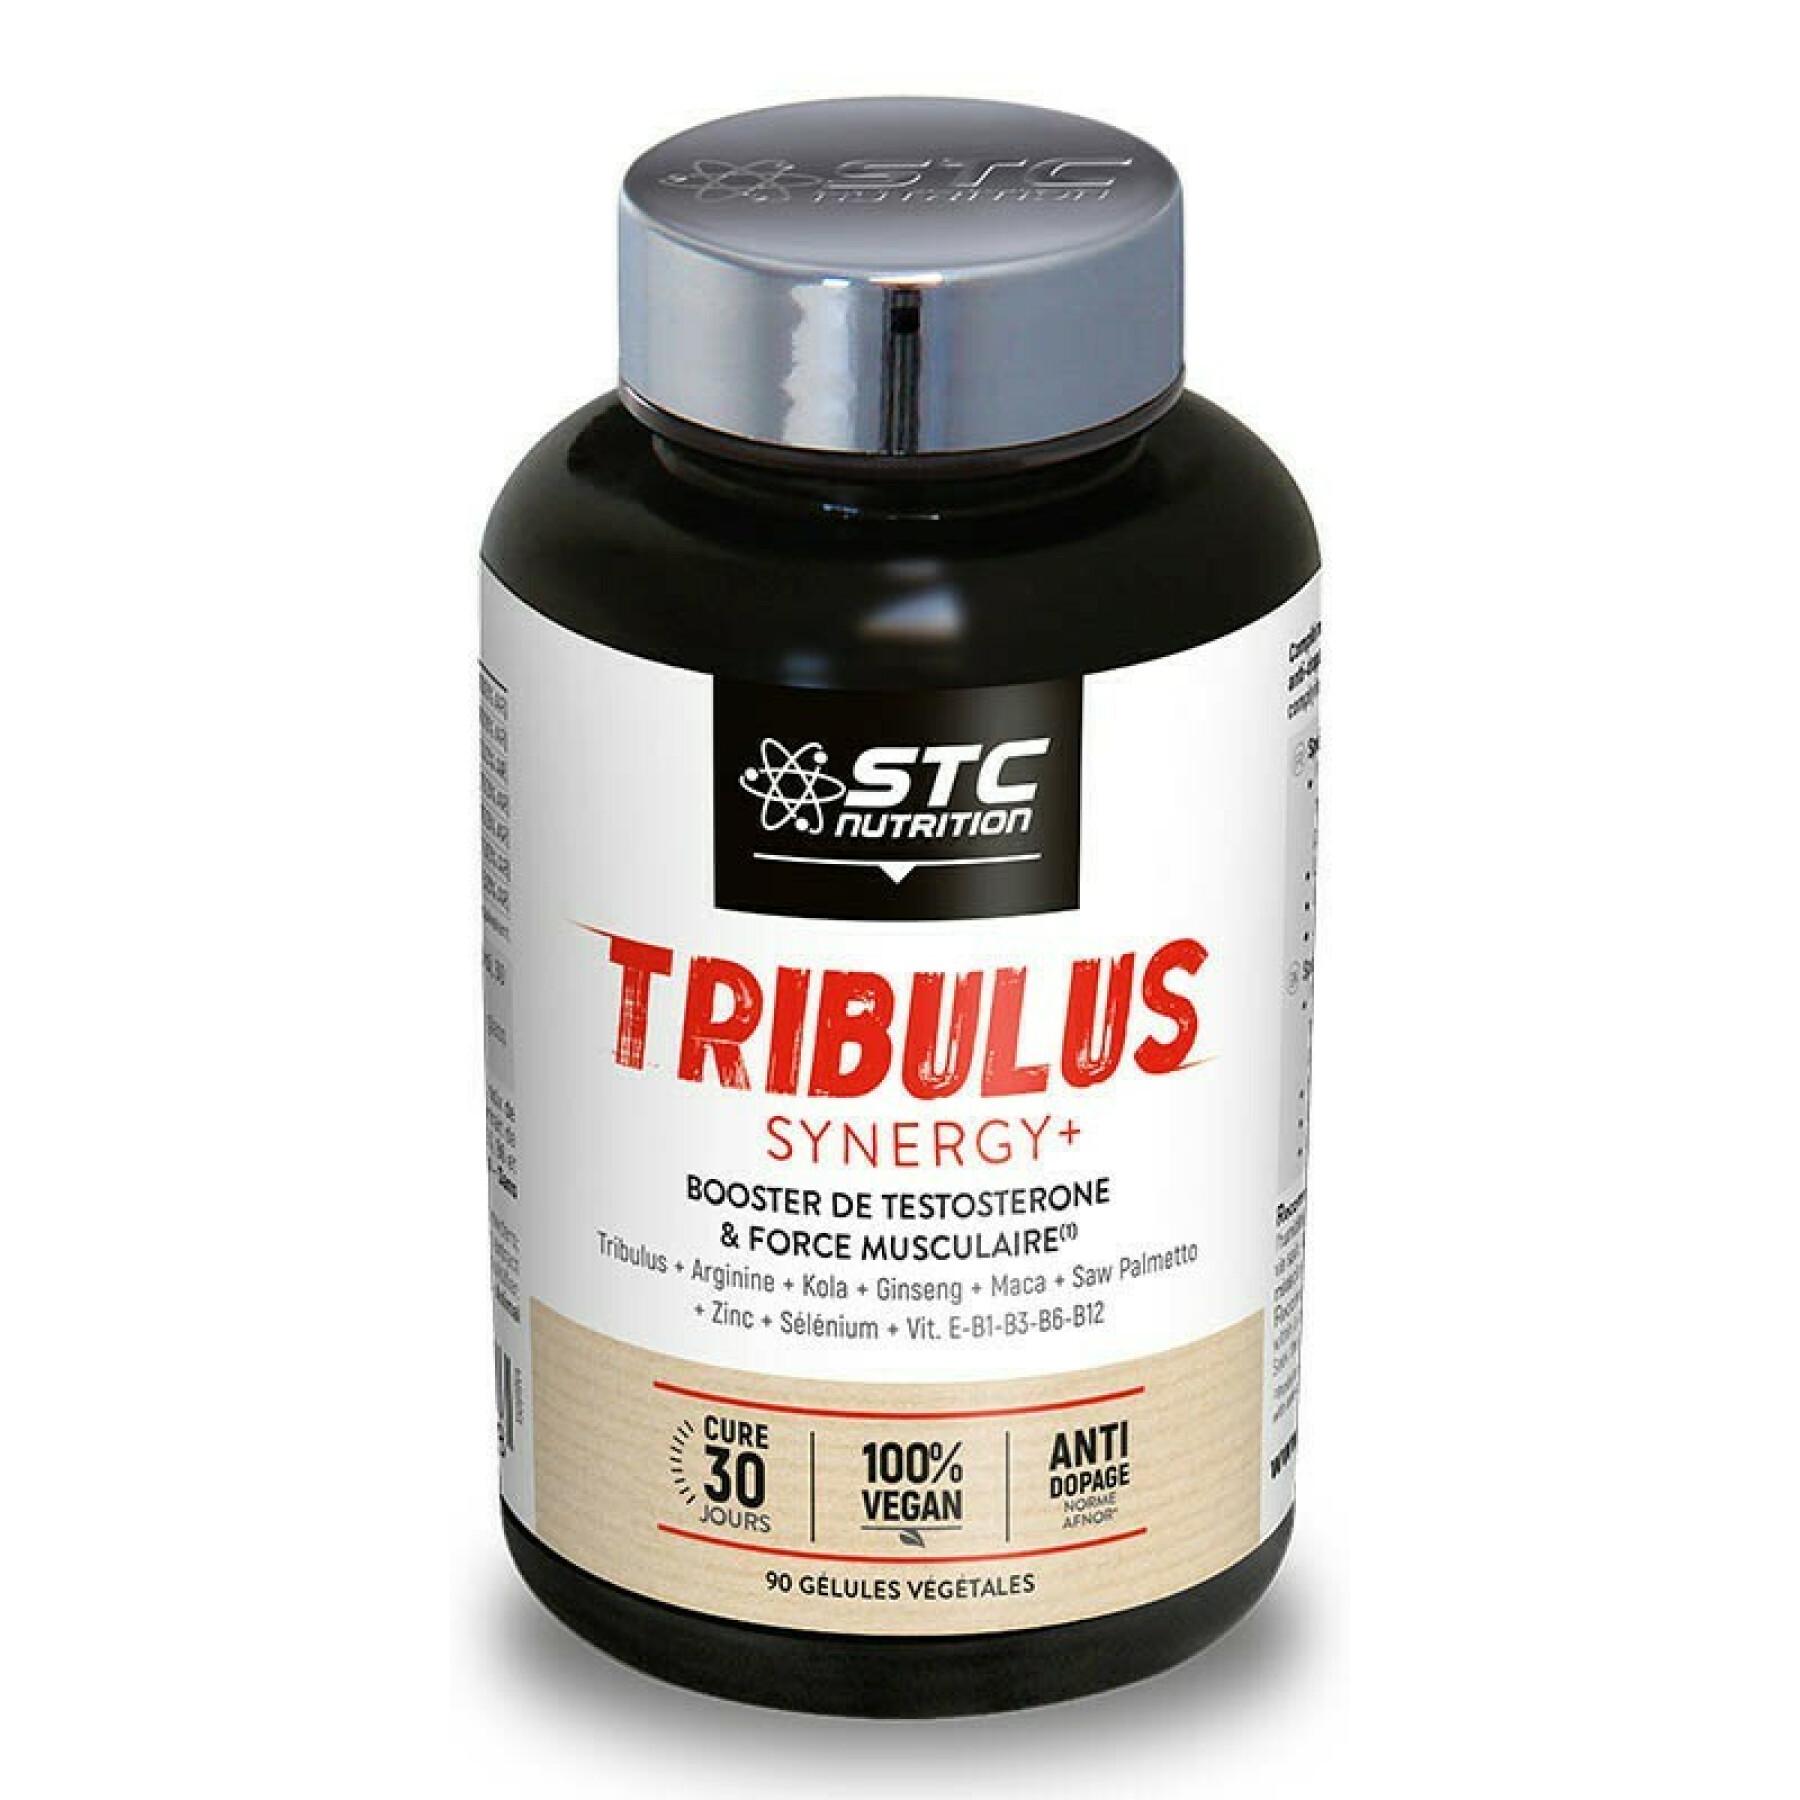 Förstärkare av testosteron och muskelstyrka tribulus synergy+ STC Nutrition - 90 gélules végétales